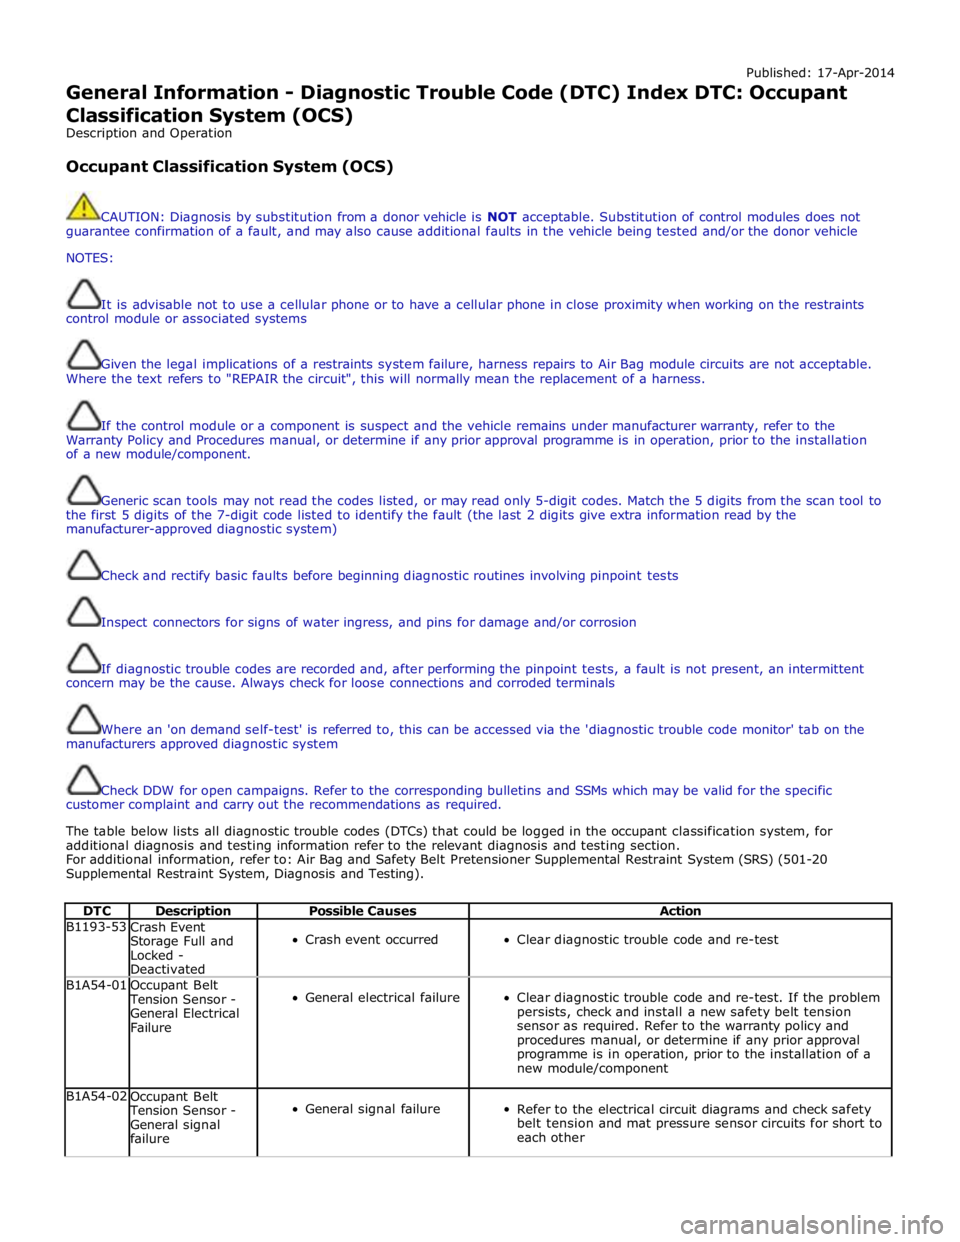 JAGUAR XFR 2010 1.G Workshop Manual Published: 17-Apr-2014 
General Information - Diagnostic Trouble Code (DTC) Index DTC: Occupant Classification System (OCS) 
Description and Operation 
 
Occupant Classification System (OCS) 
 
 
CAUT